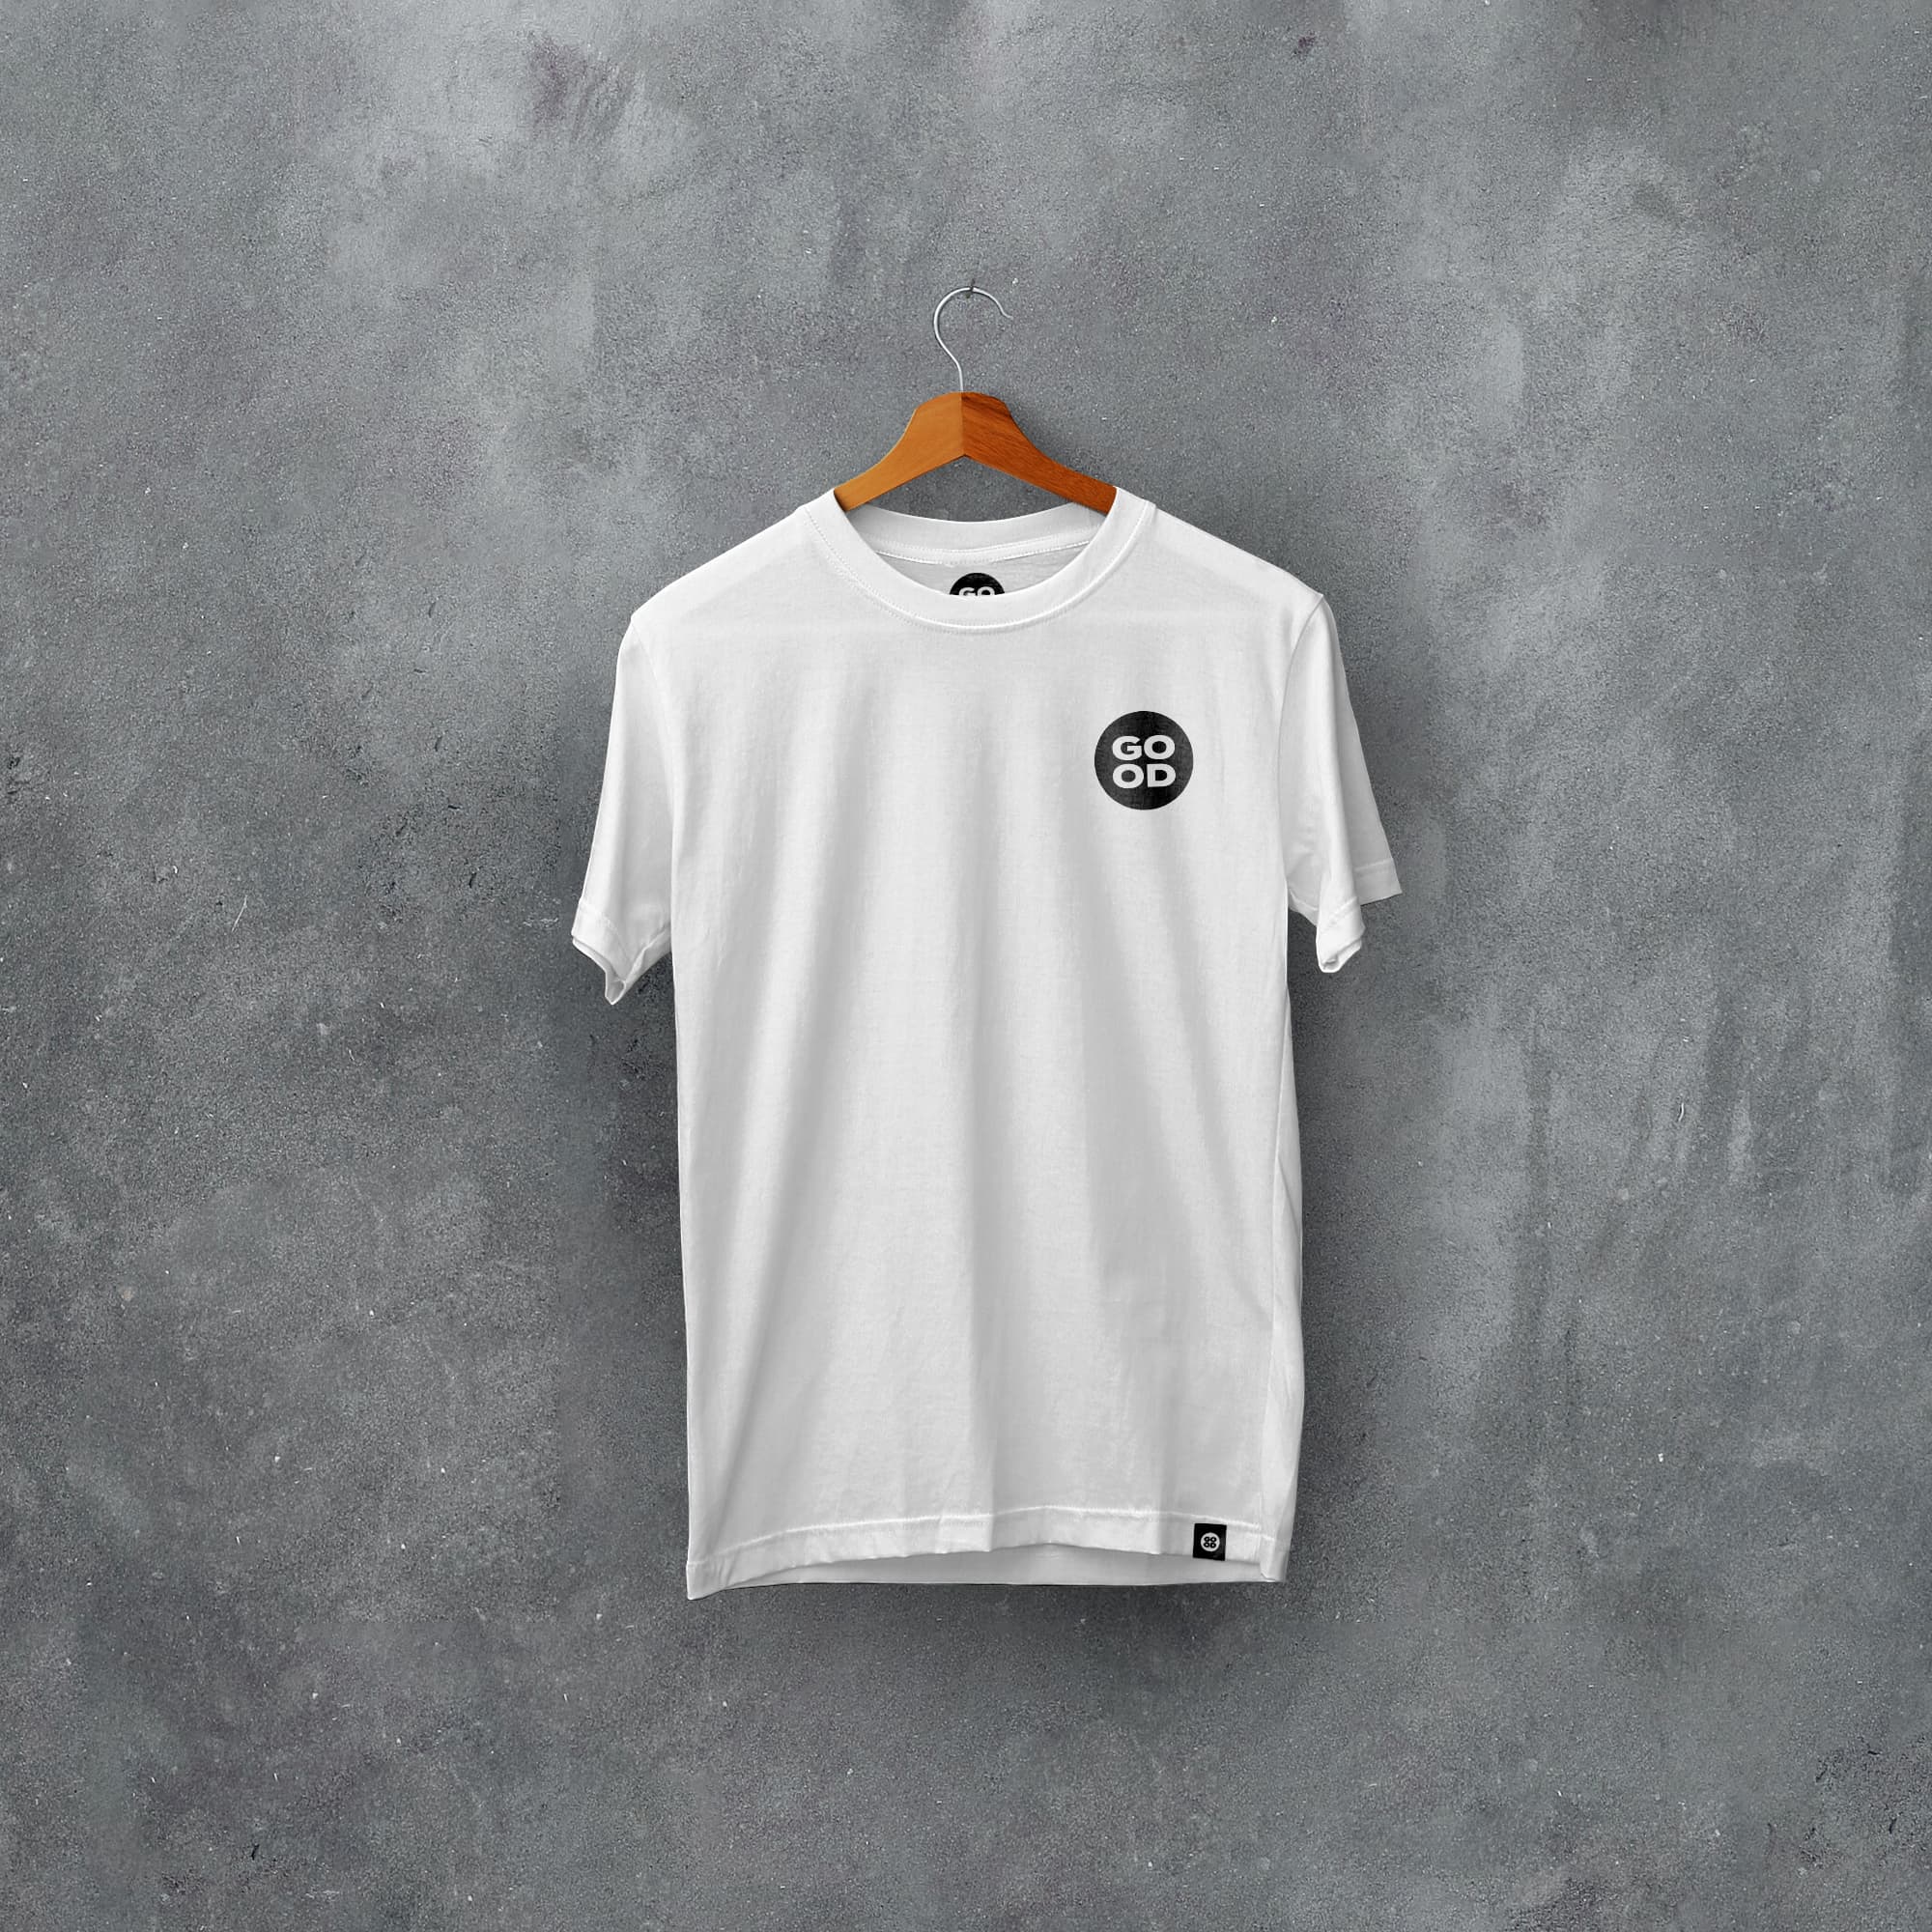 Aberdeen Classic Kits Football T-Shirt